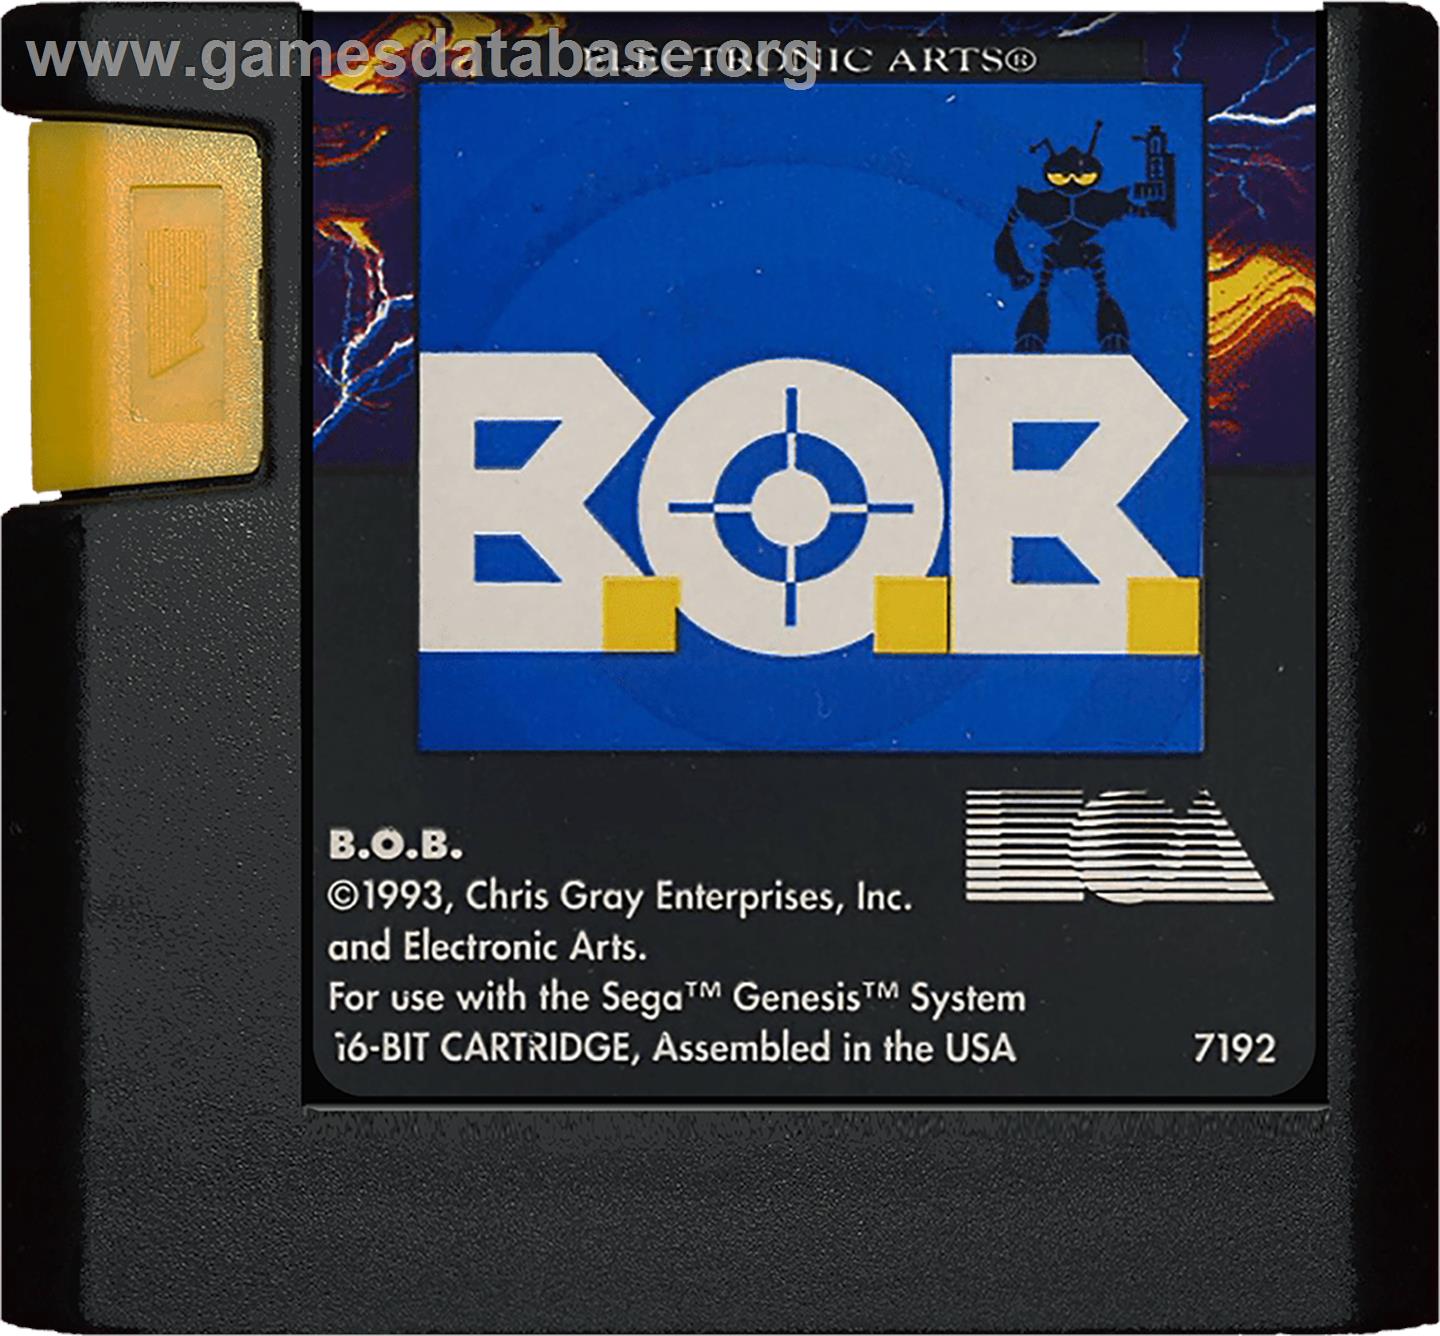 B.O.B. - Sega Genesis - Artwork - Cartridge